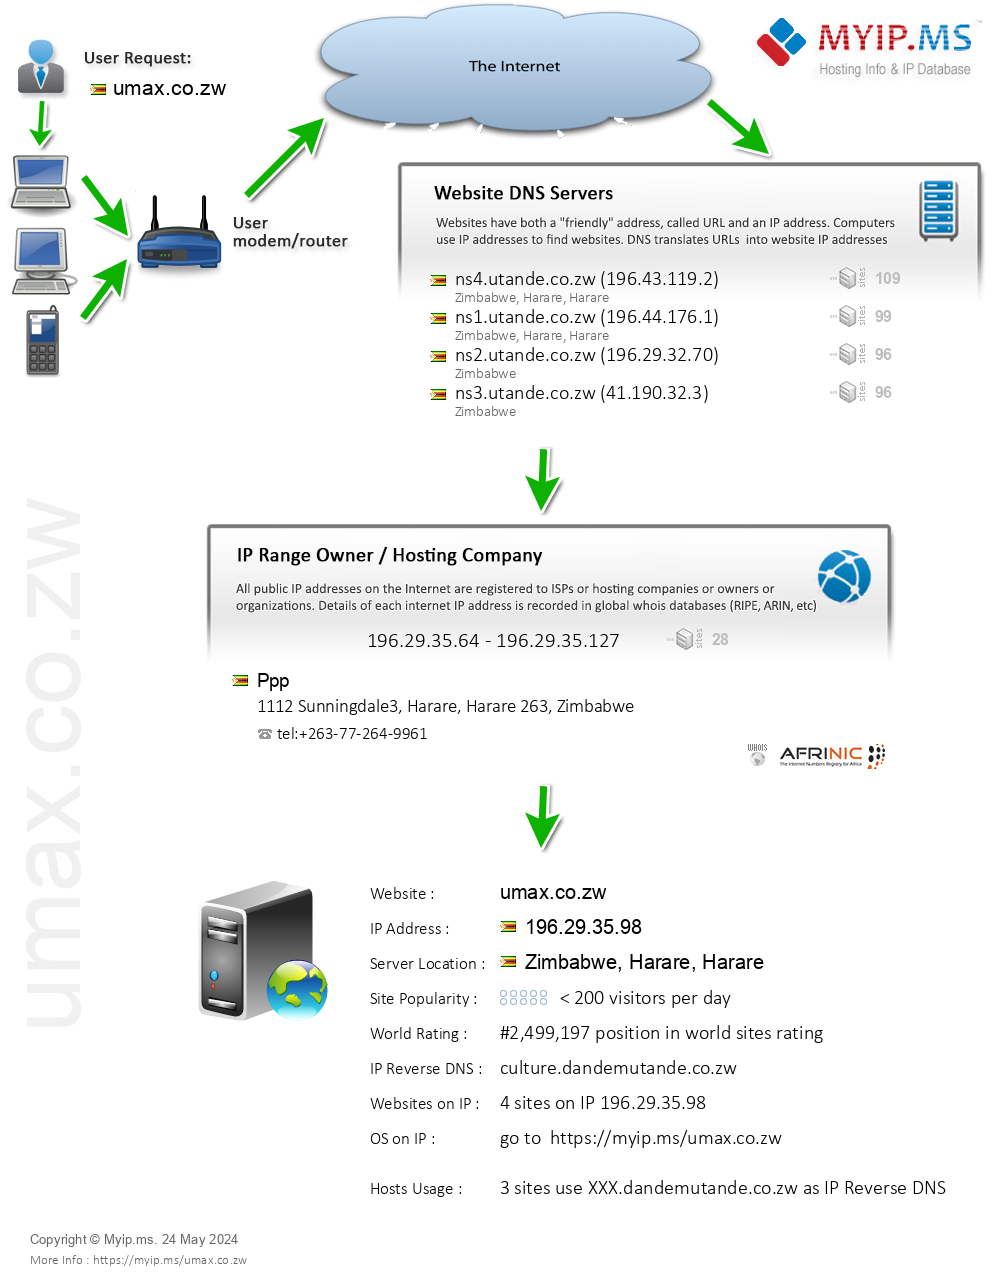 Umax.co.zw - Website Hosting Visual IP Diagram